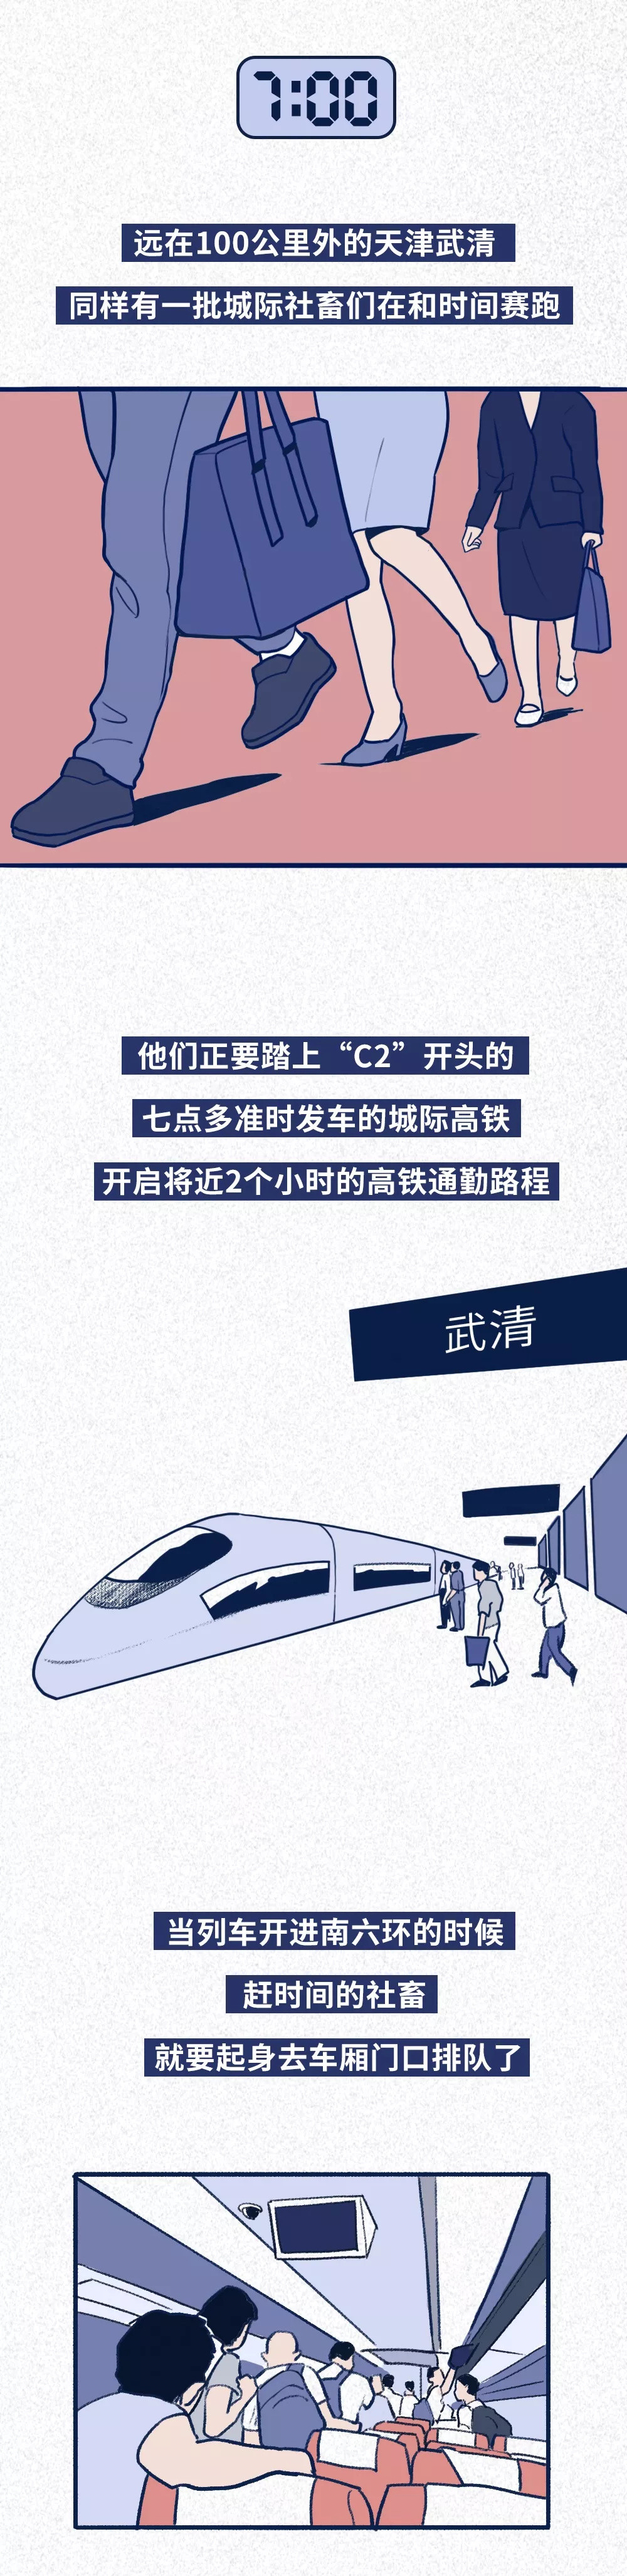 北京通勤图鉴：打车贵，公交堵，挤地铁的社畜得练武